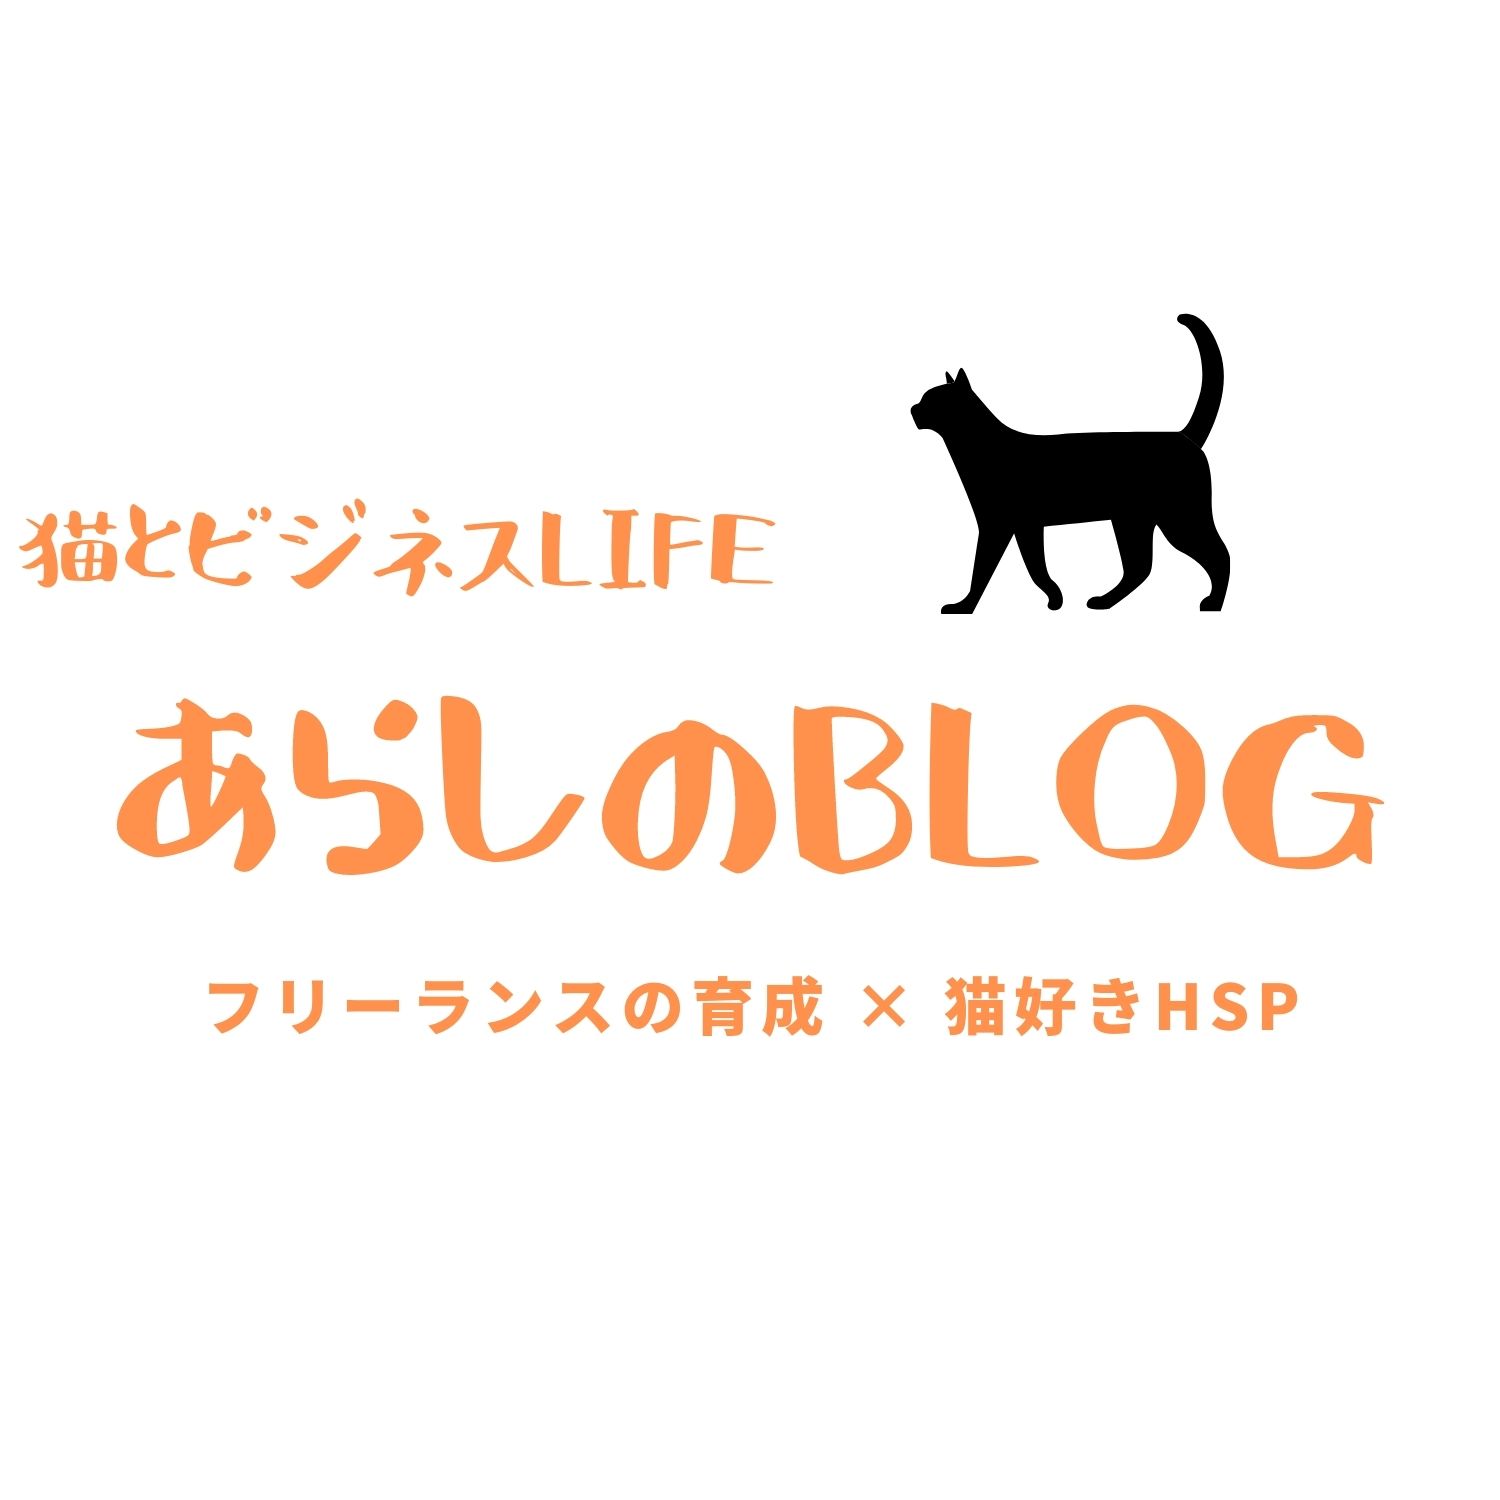 あらしOffcial Blog